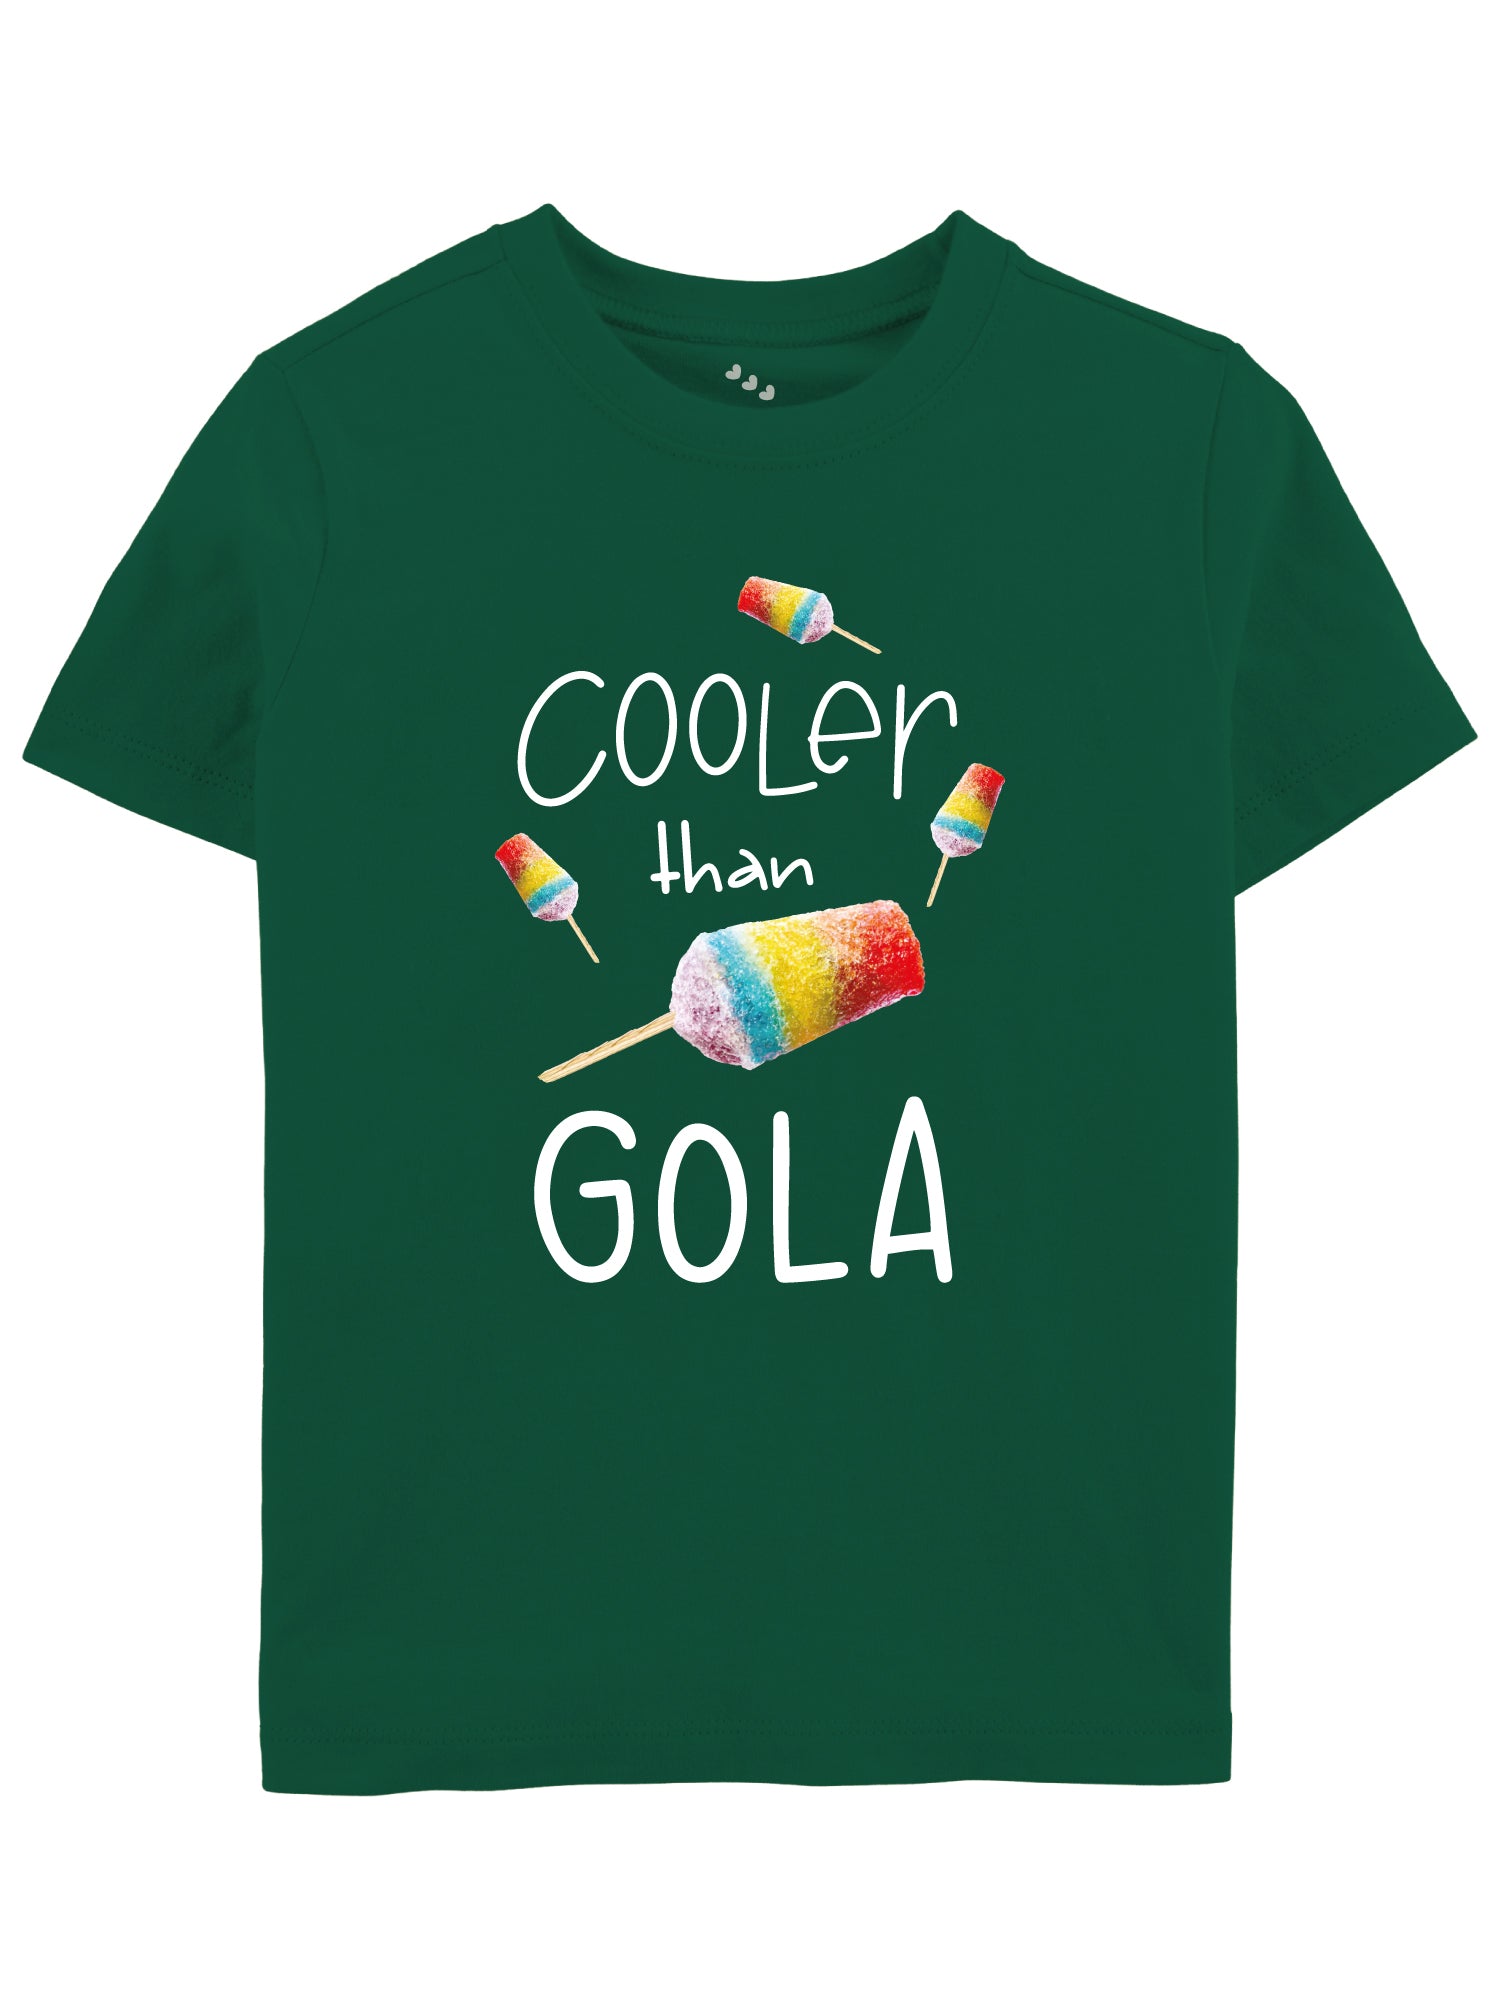 Cooler than Gola - Tee